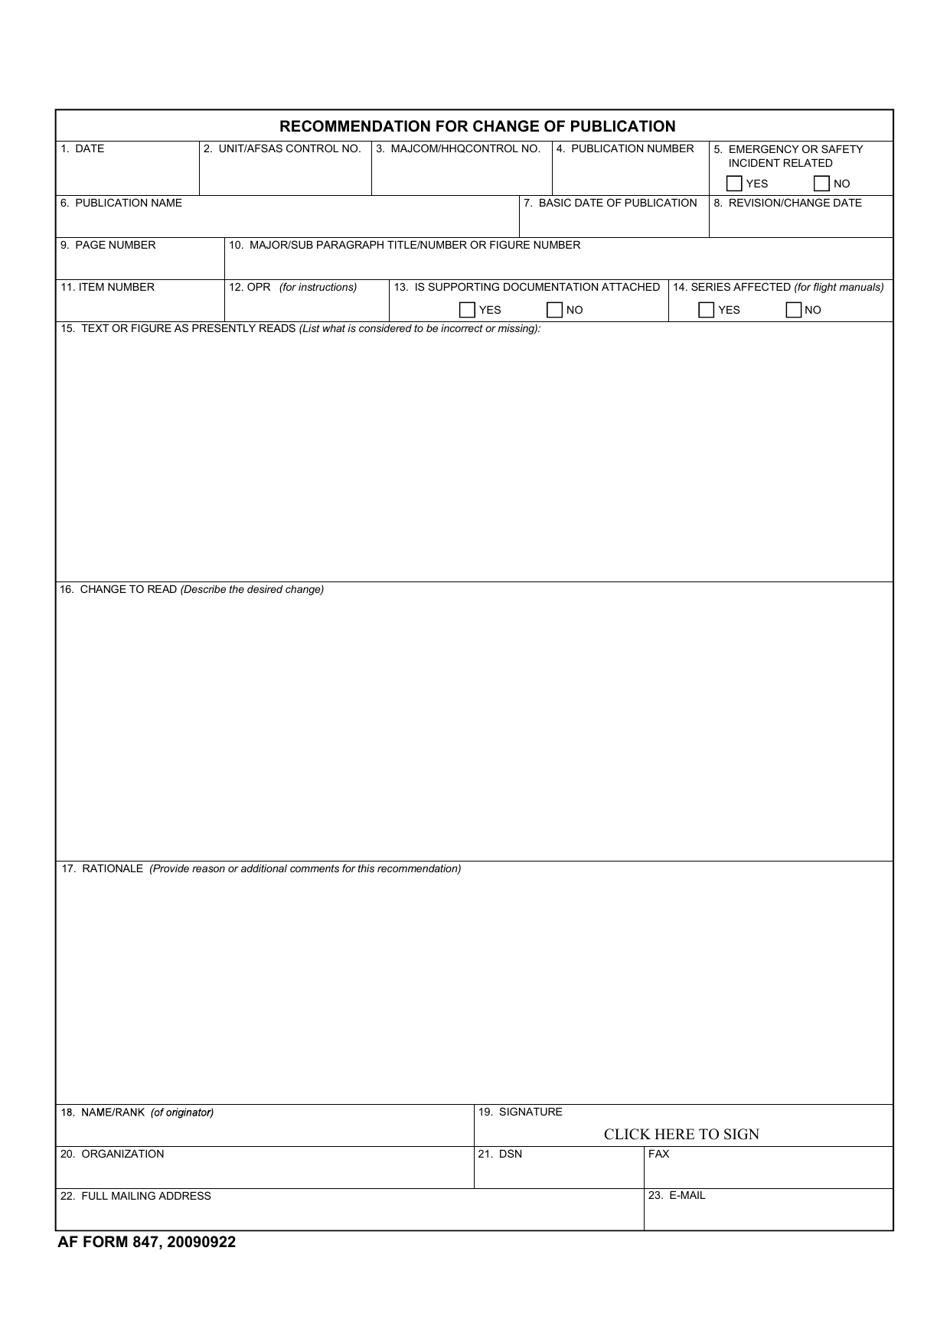 AF Form 847 Recommendation for Change of Publication, Page 1